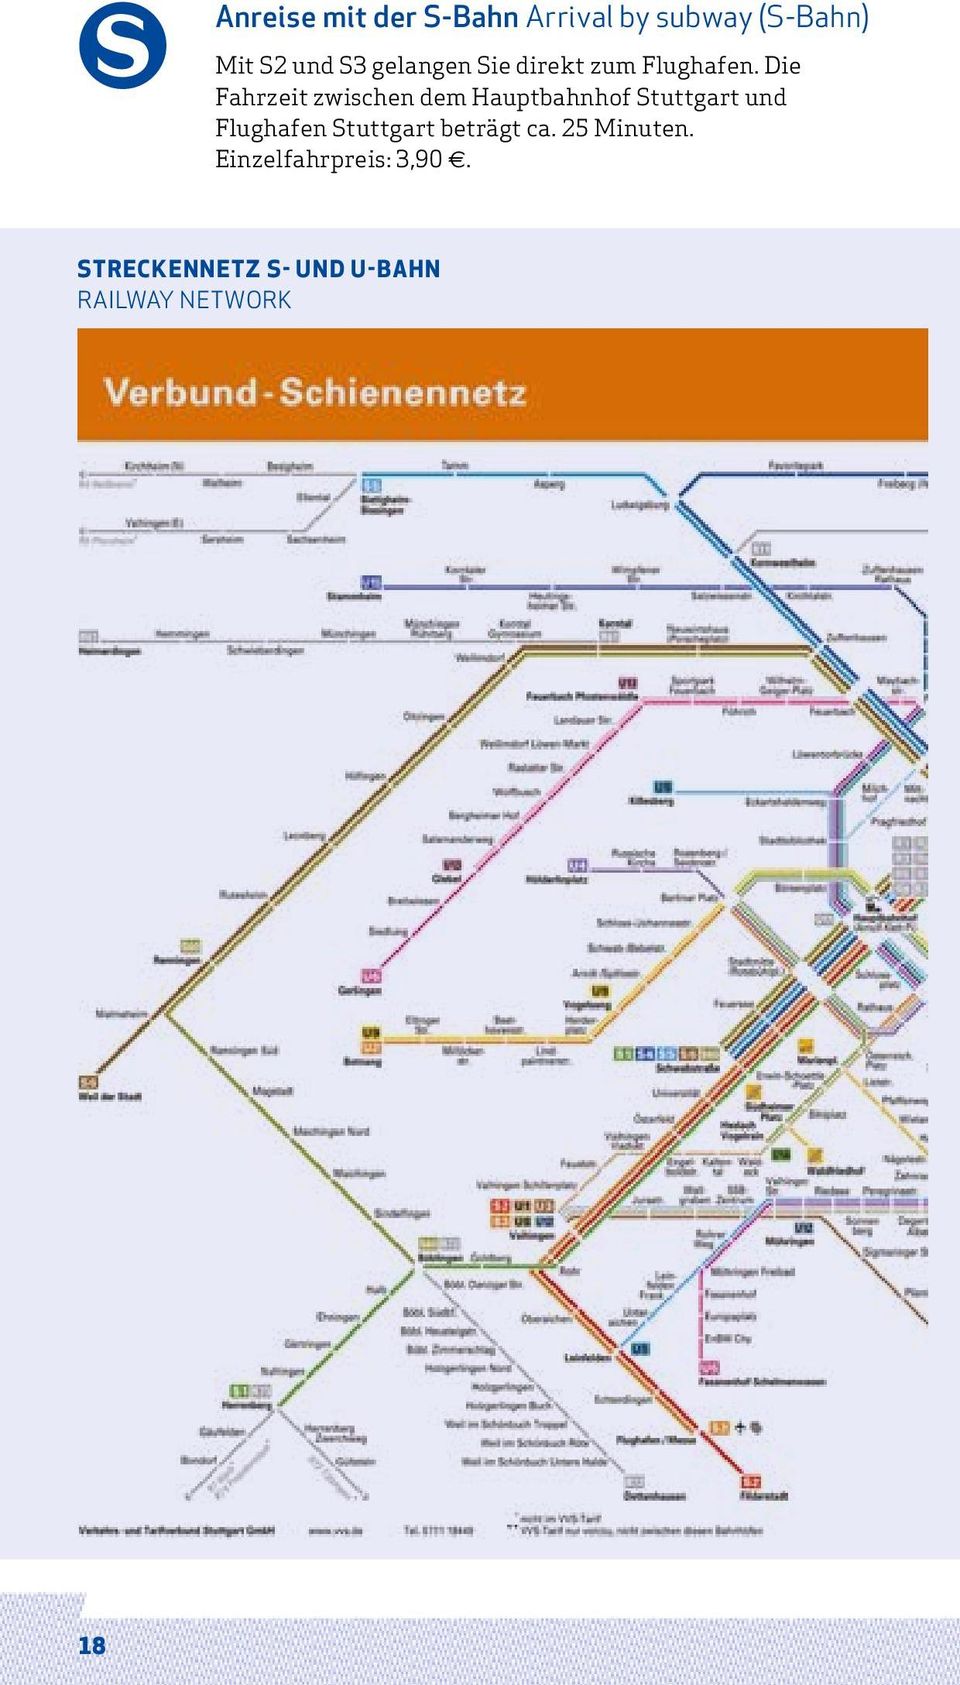 Die Fahrzeit zwischen dem Hauptbahnhof Stuttgart und Flughafen